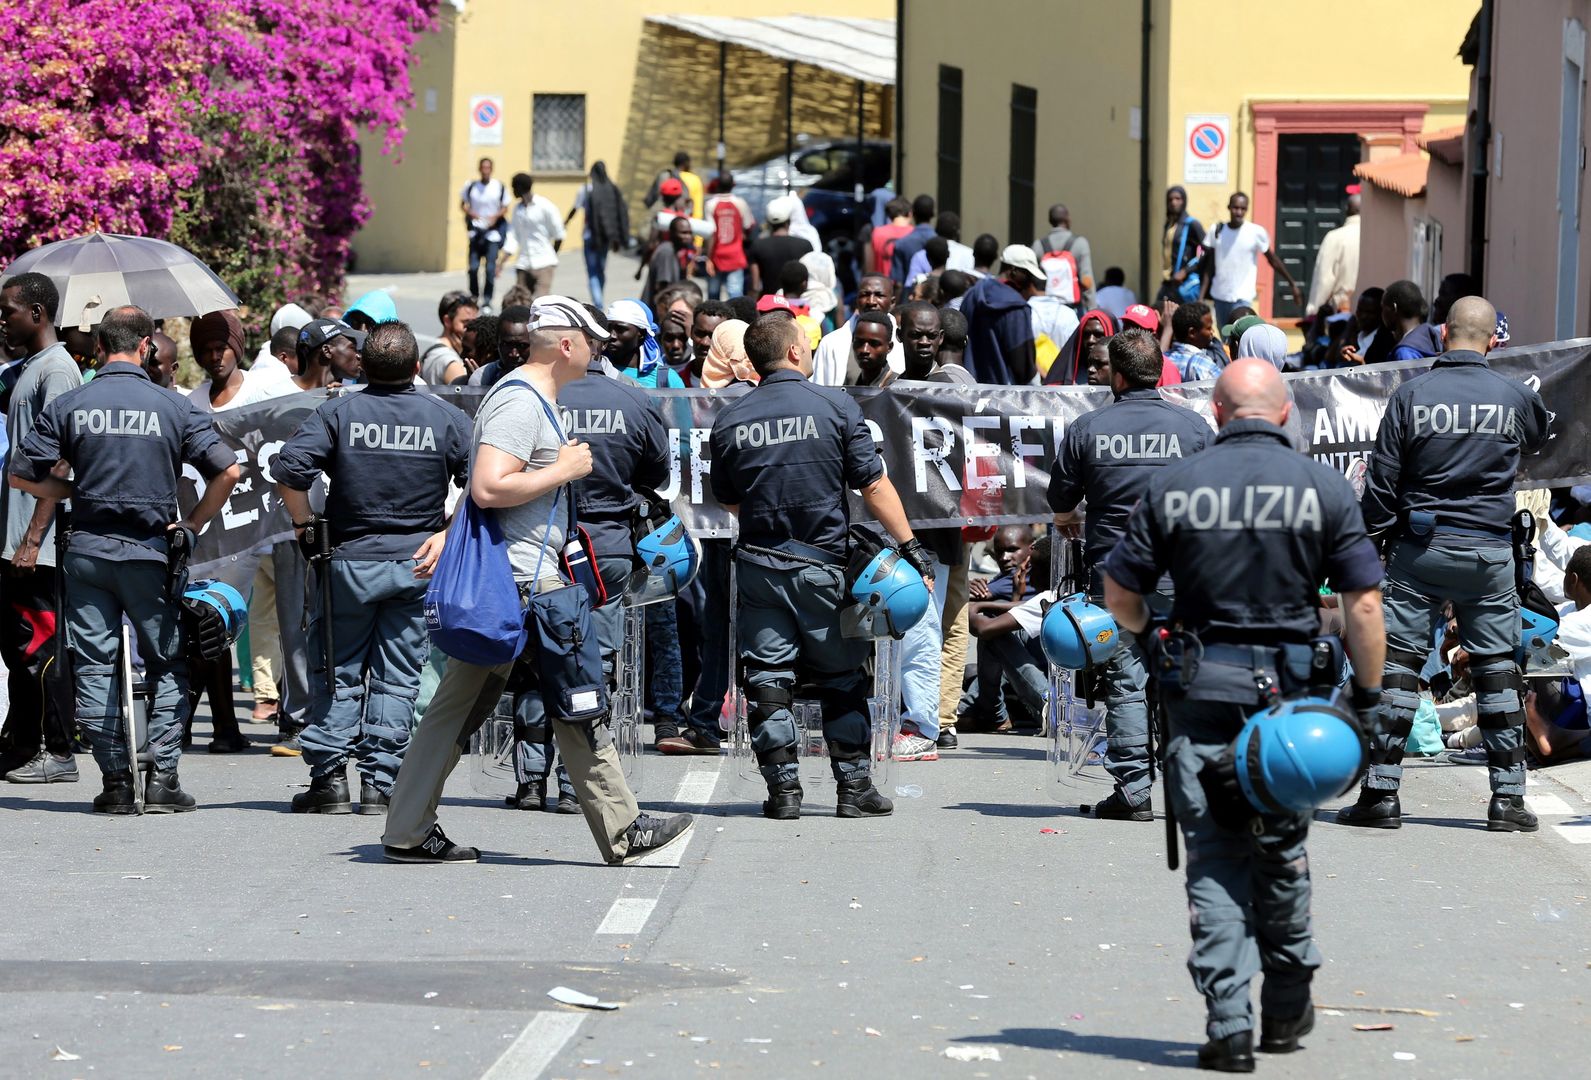 Włoska policja miała torturować imigrantów